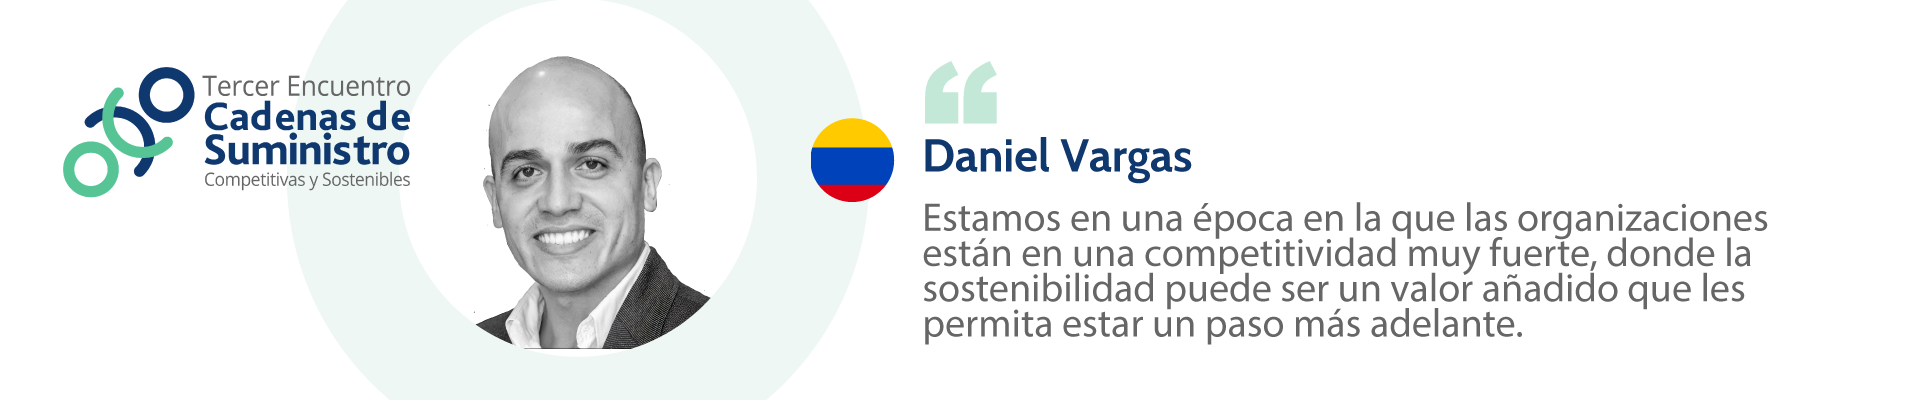 9.-Daniel-Vargas